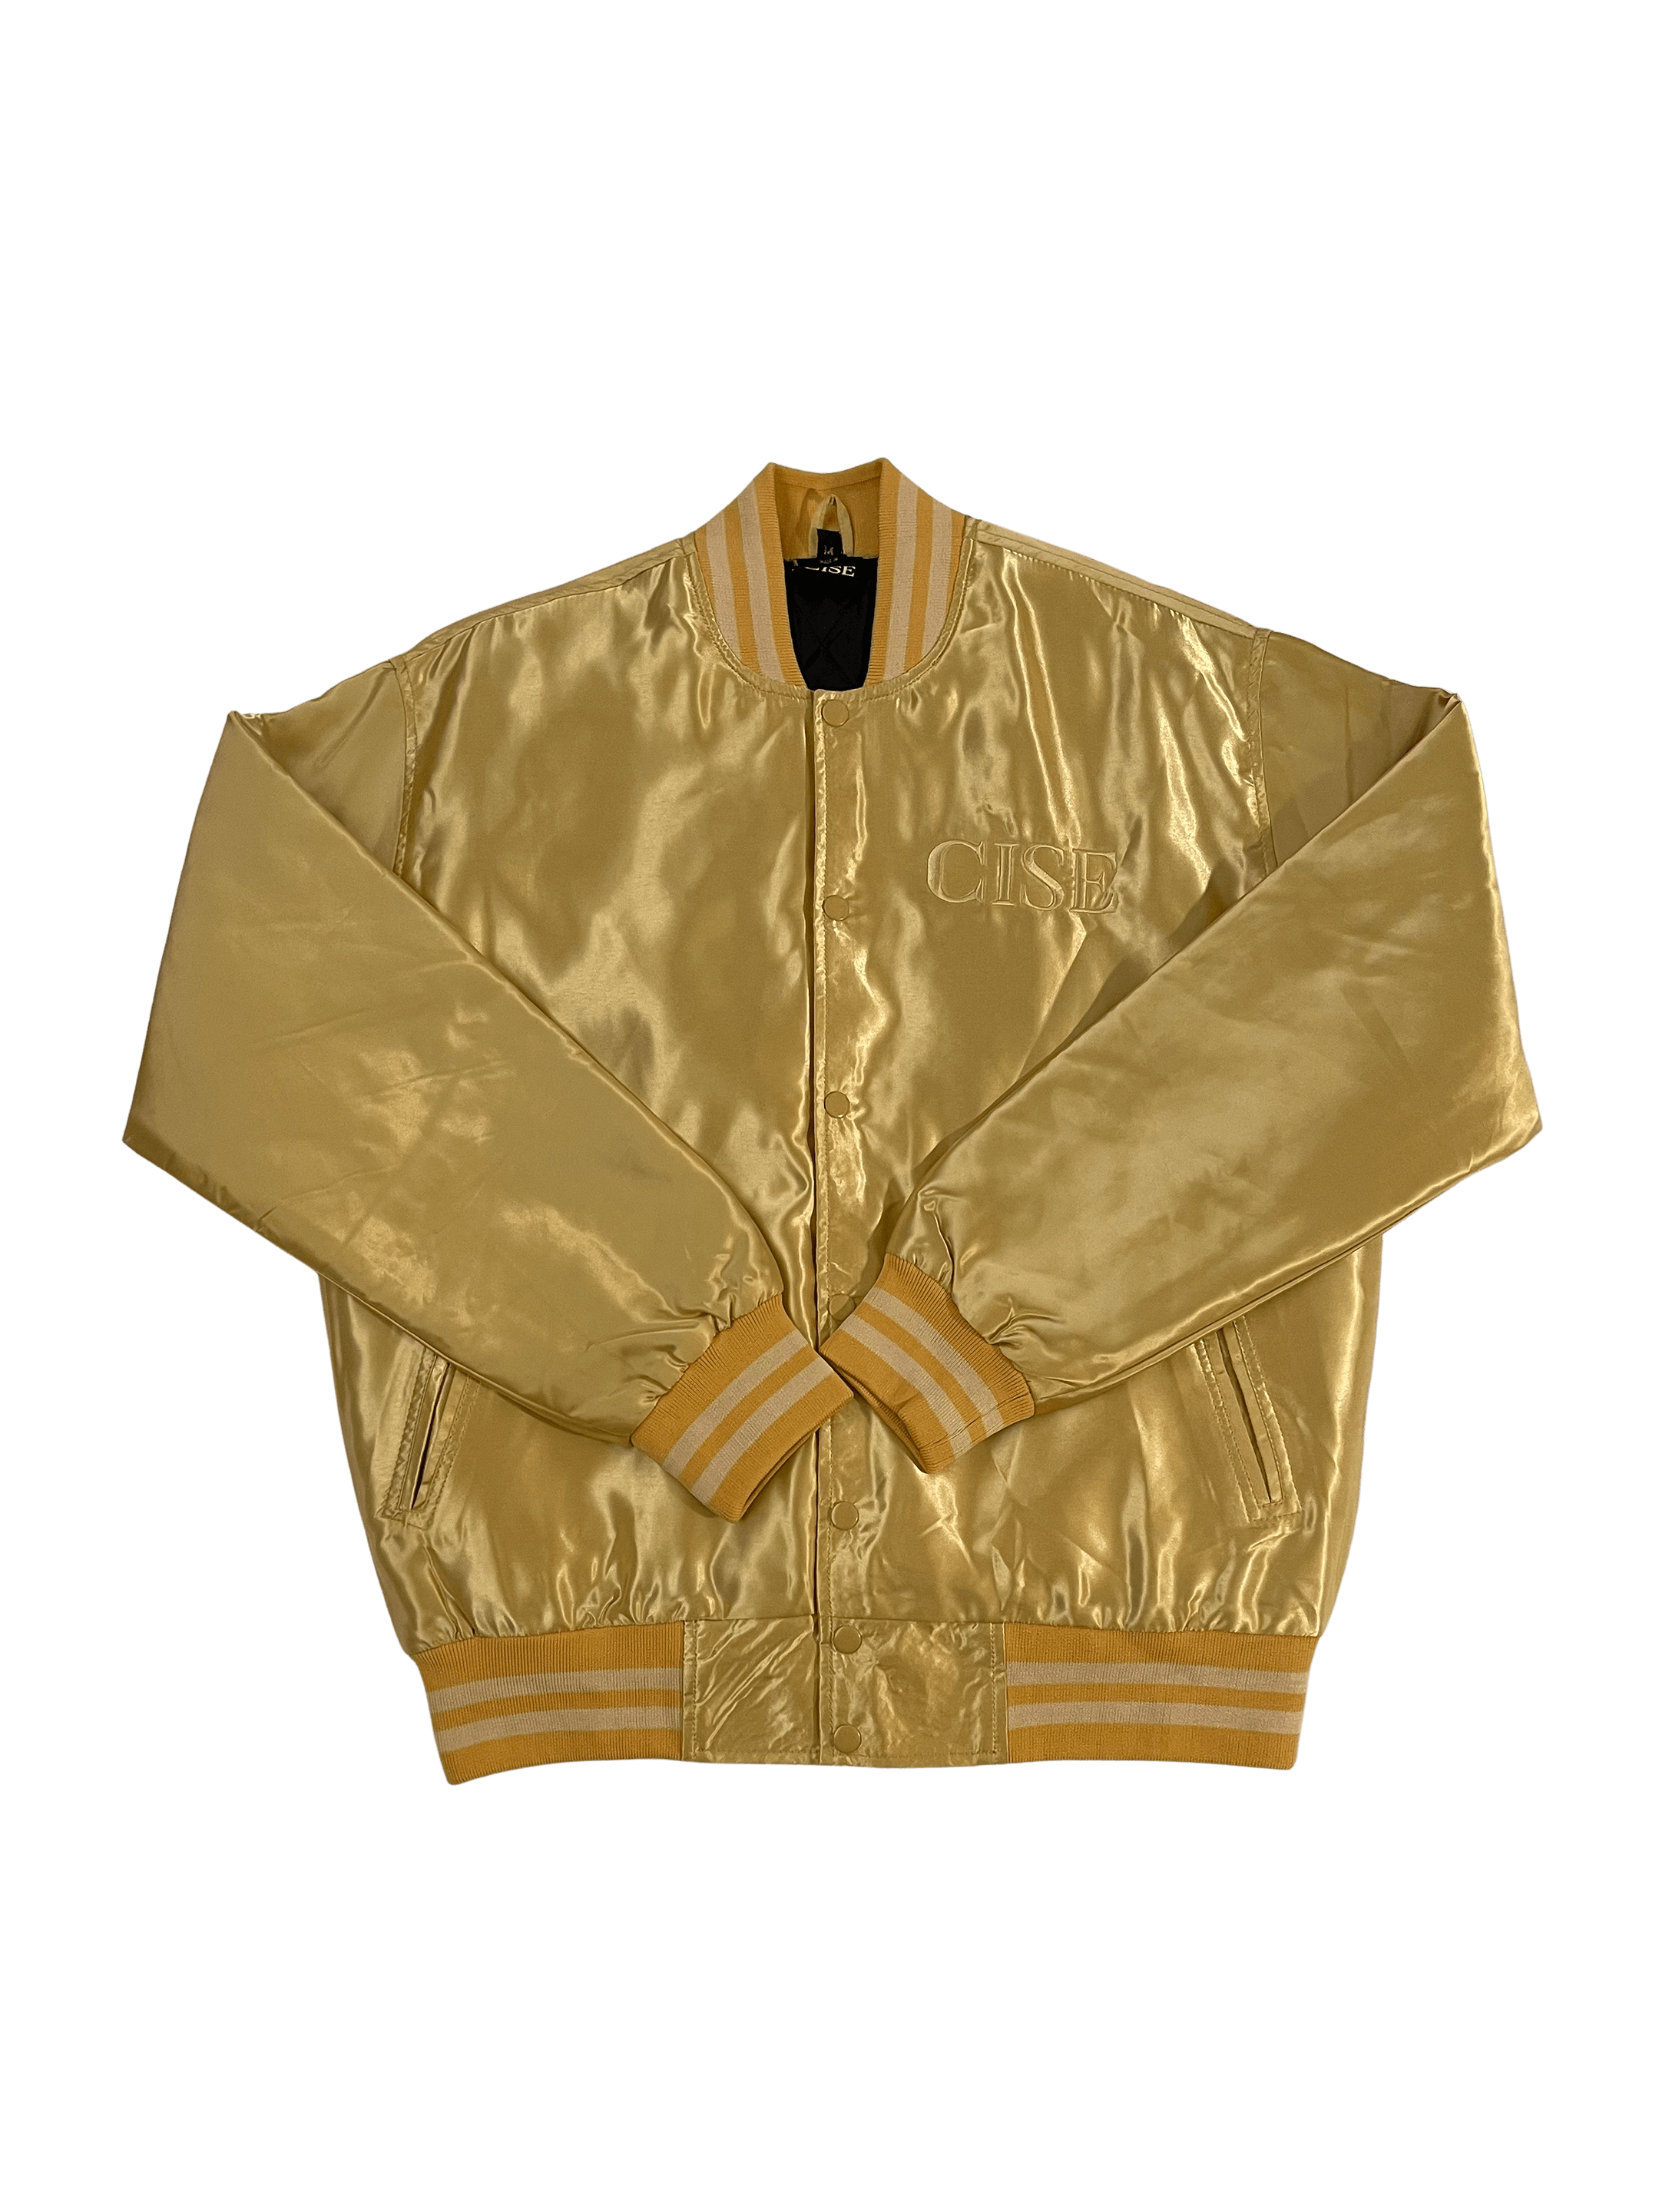 PBW - Varsity Jersey Jacket (Gold) Small